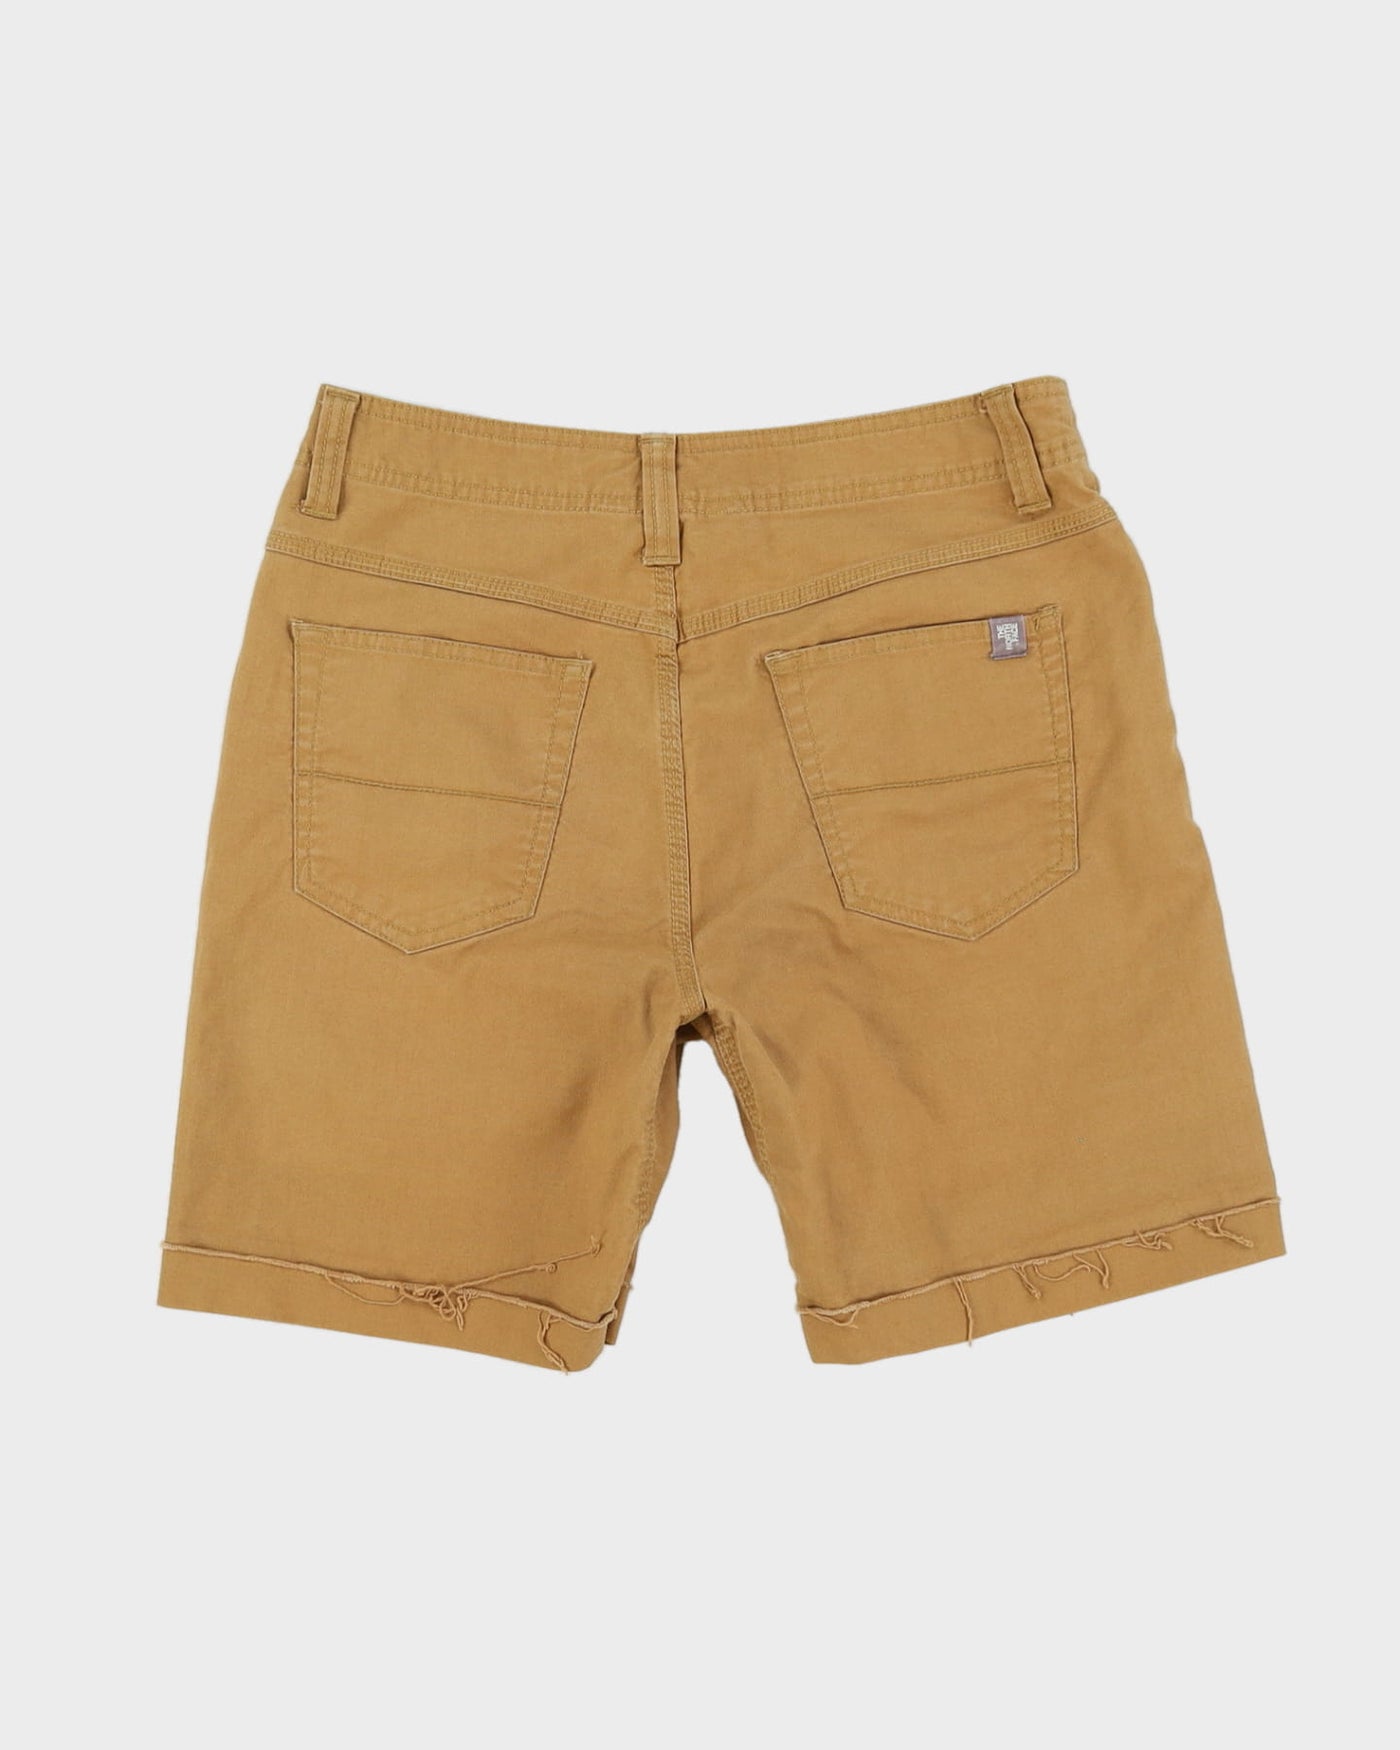 00s The North Face Brown / Dark Beige Shorts - W30